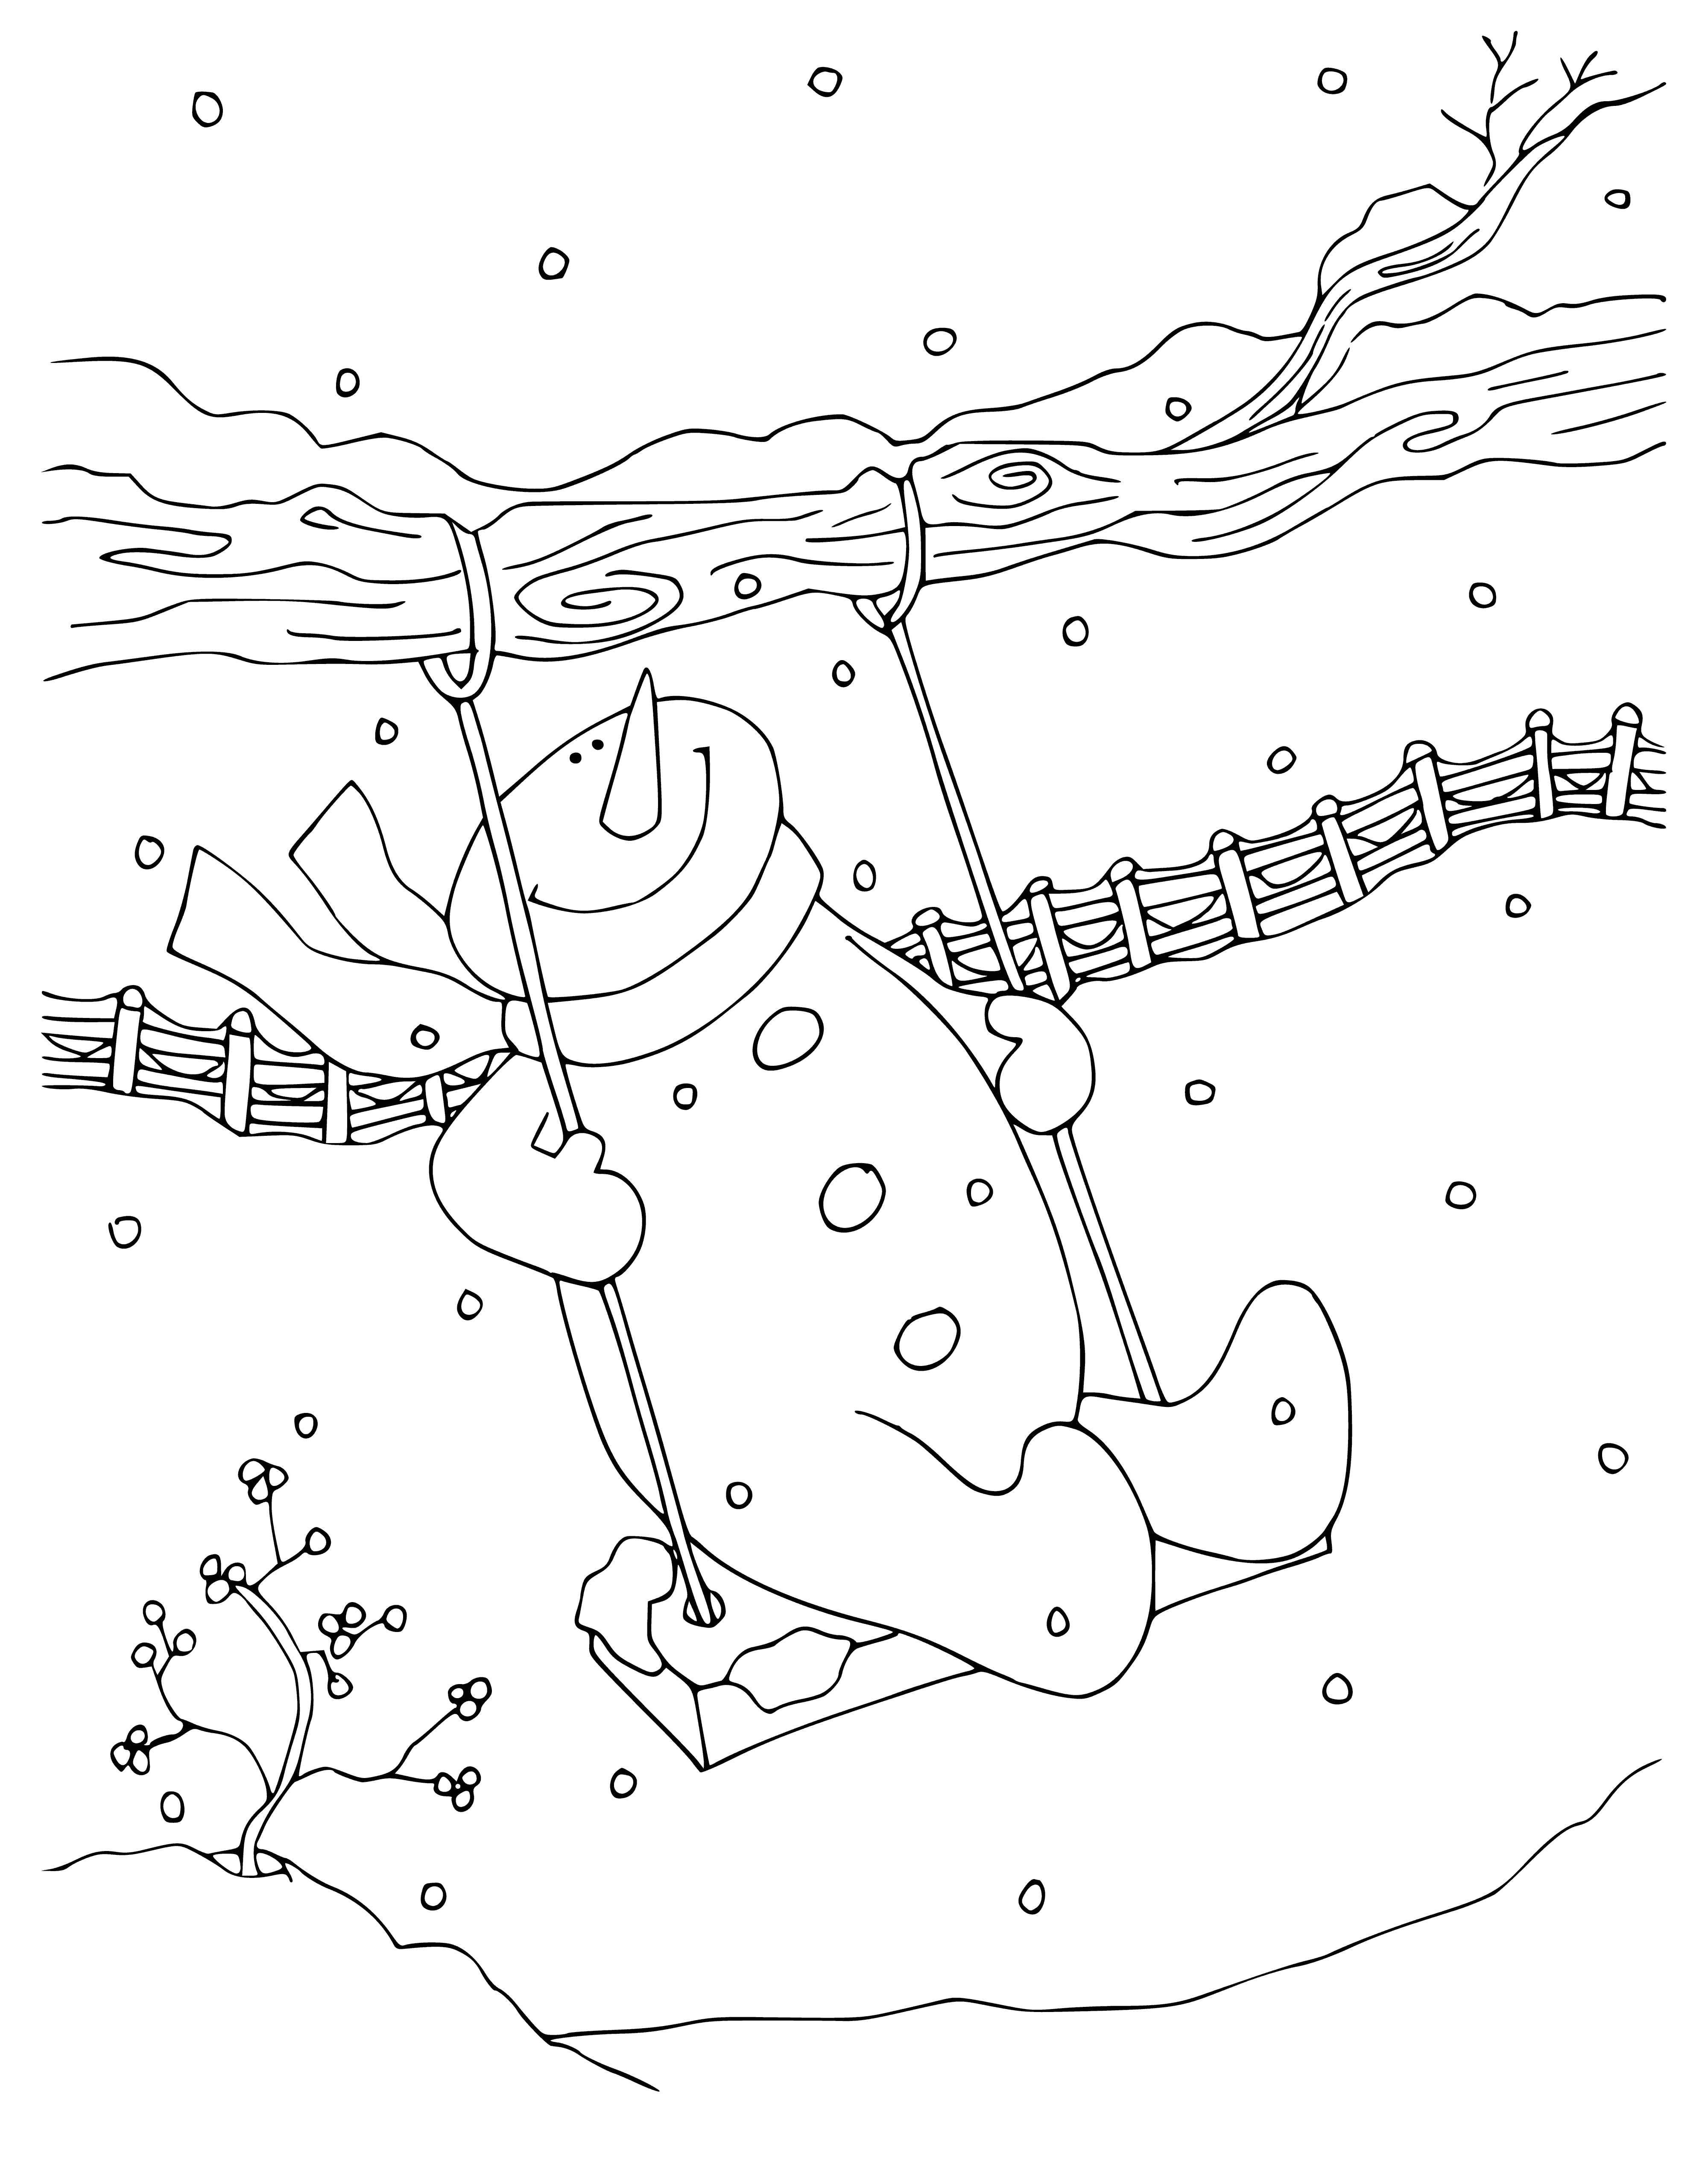 salıncakta sallanan kardan adam boyama sayfası